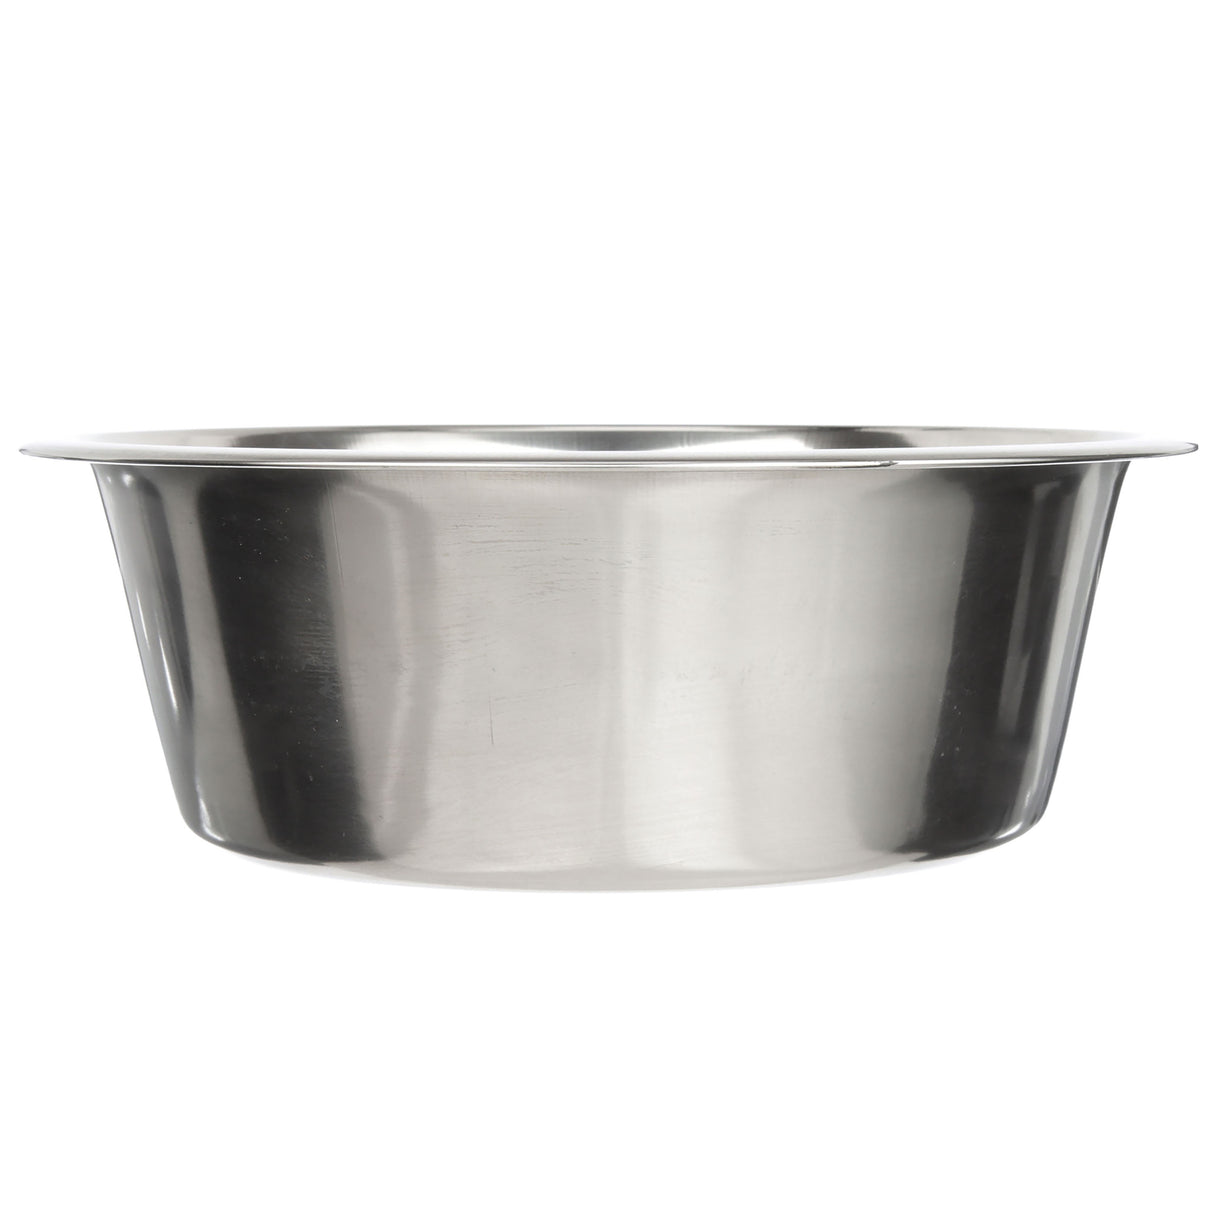 Raised Dog Bowls Extra Large Stainless Steel Dog Bowl Giant 